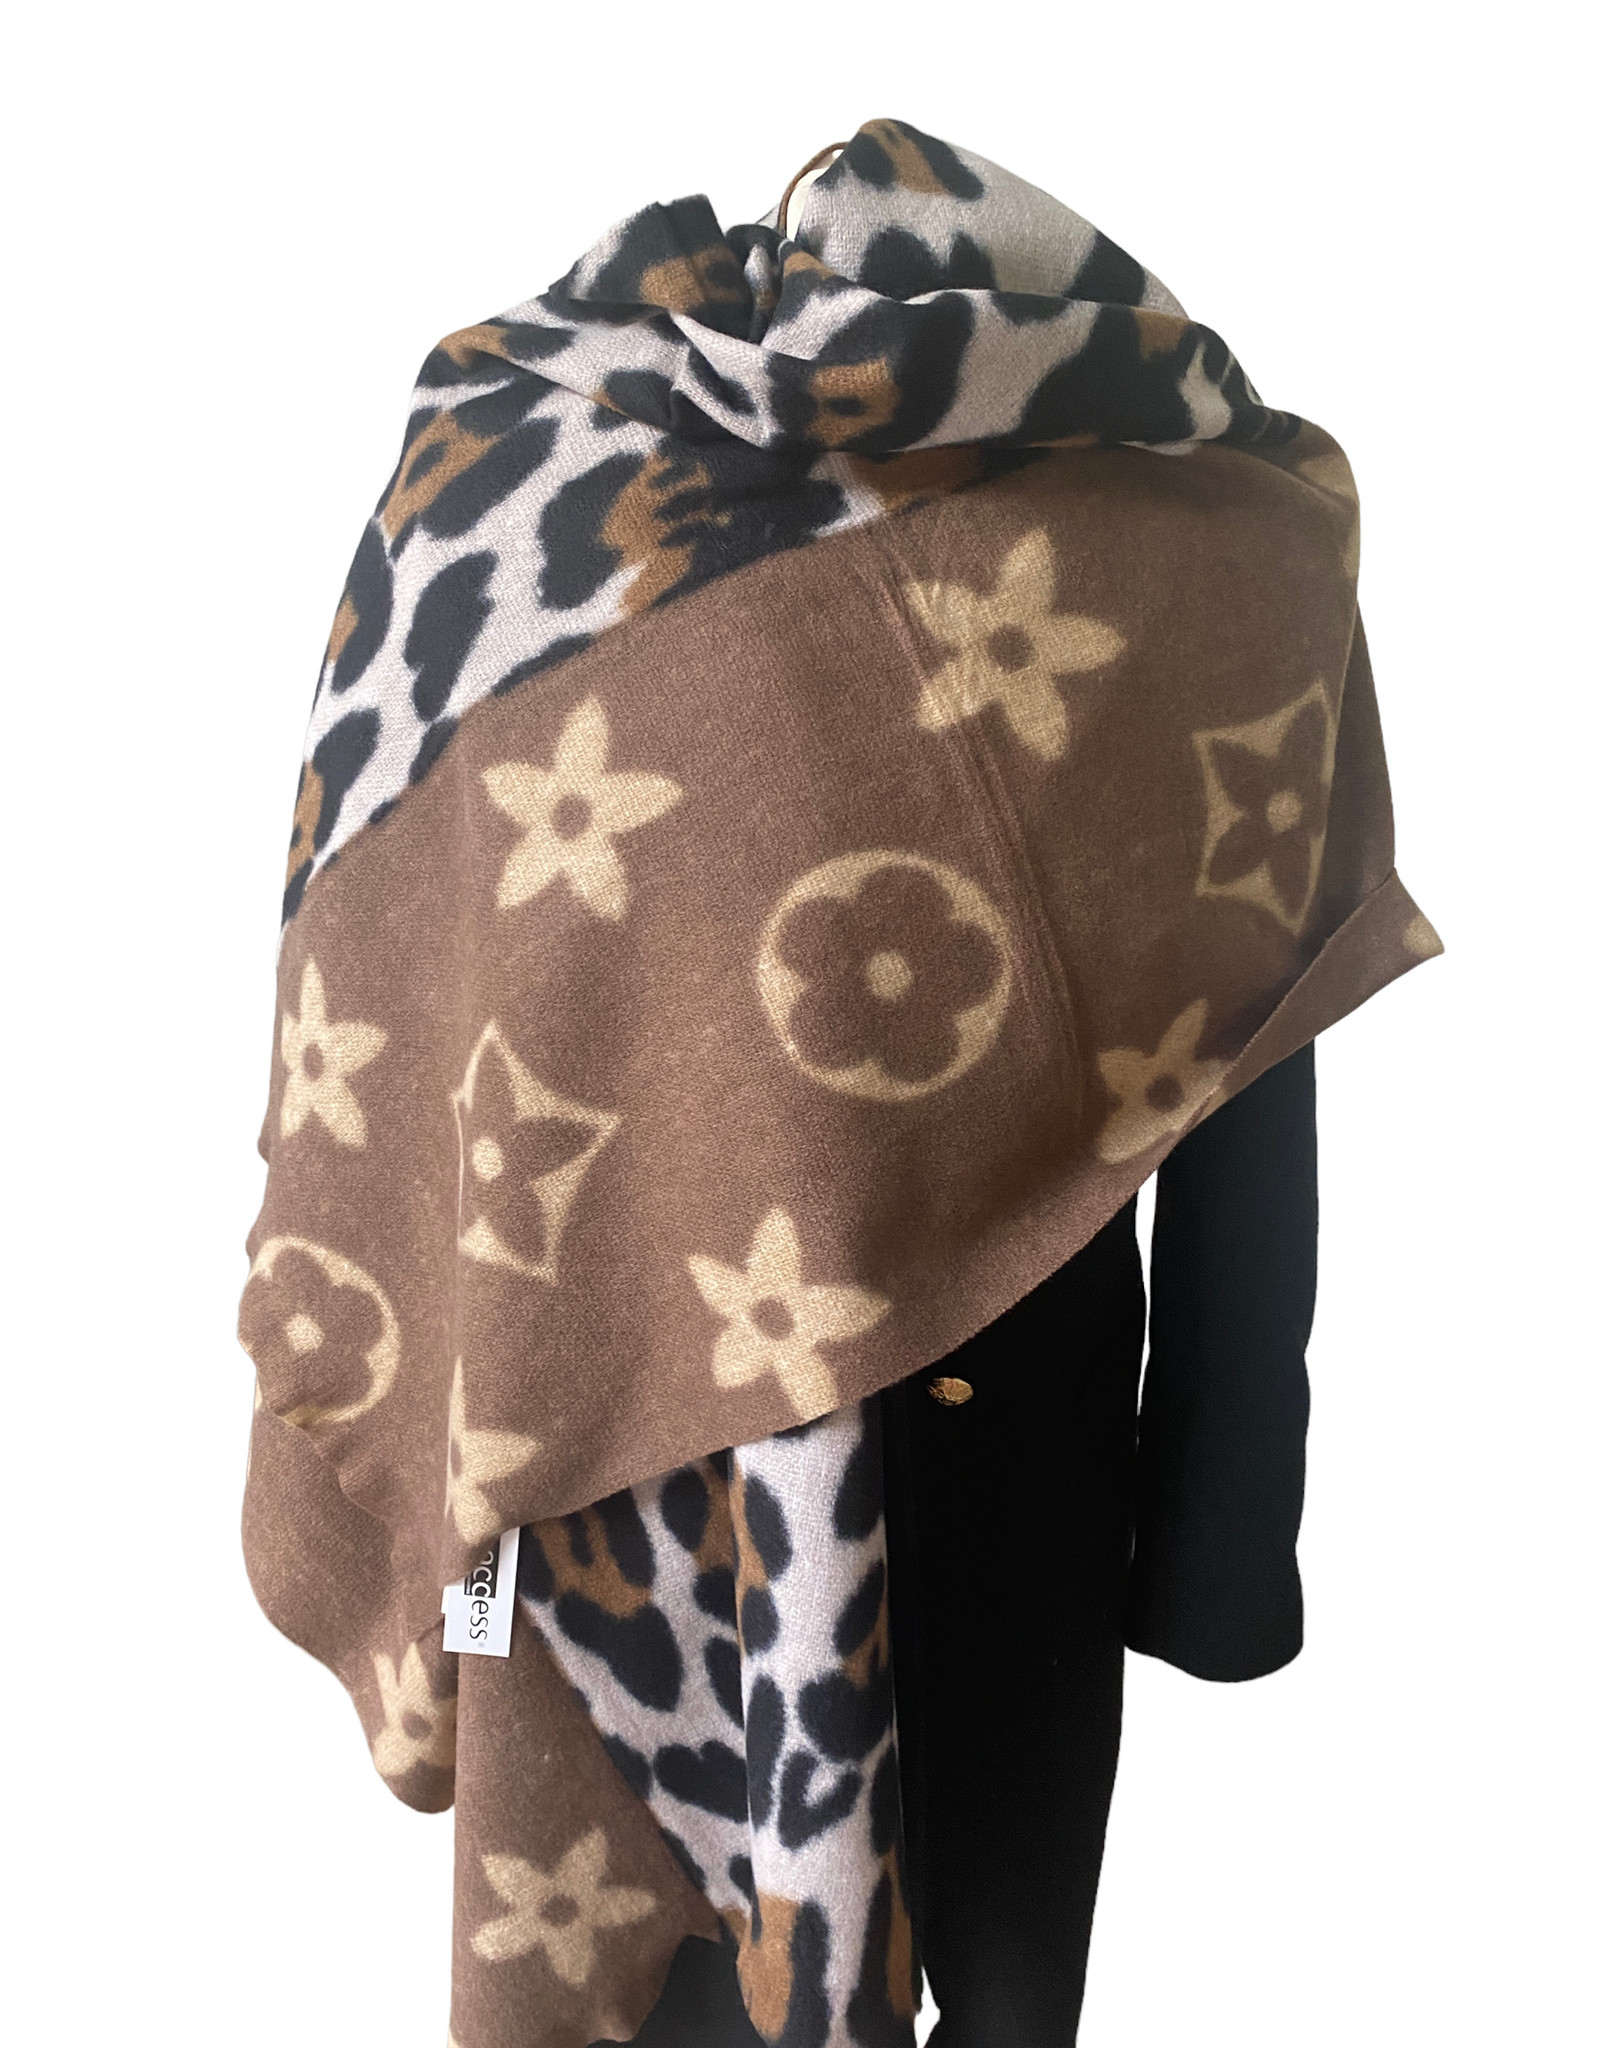 Langwerpige bruine tinten sjaal combi met leopard print en brand logo. Superzachte stof.